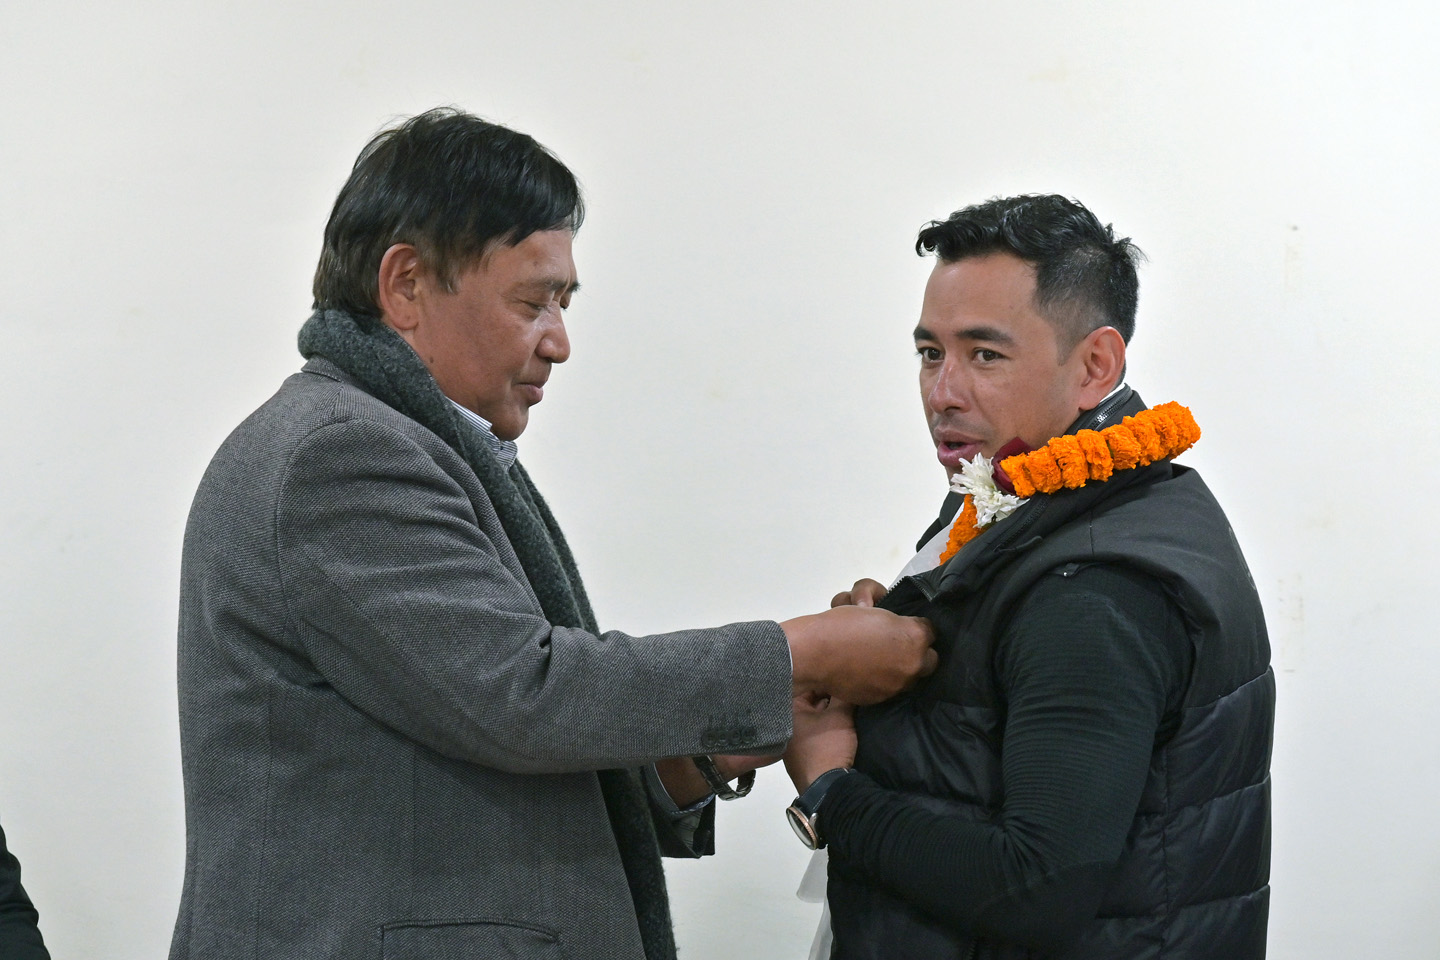 निर्मल पुर्जा नेपाल पर्वतारोहण संघको सद्भावनादूत नियुक्त